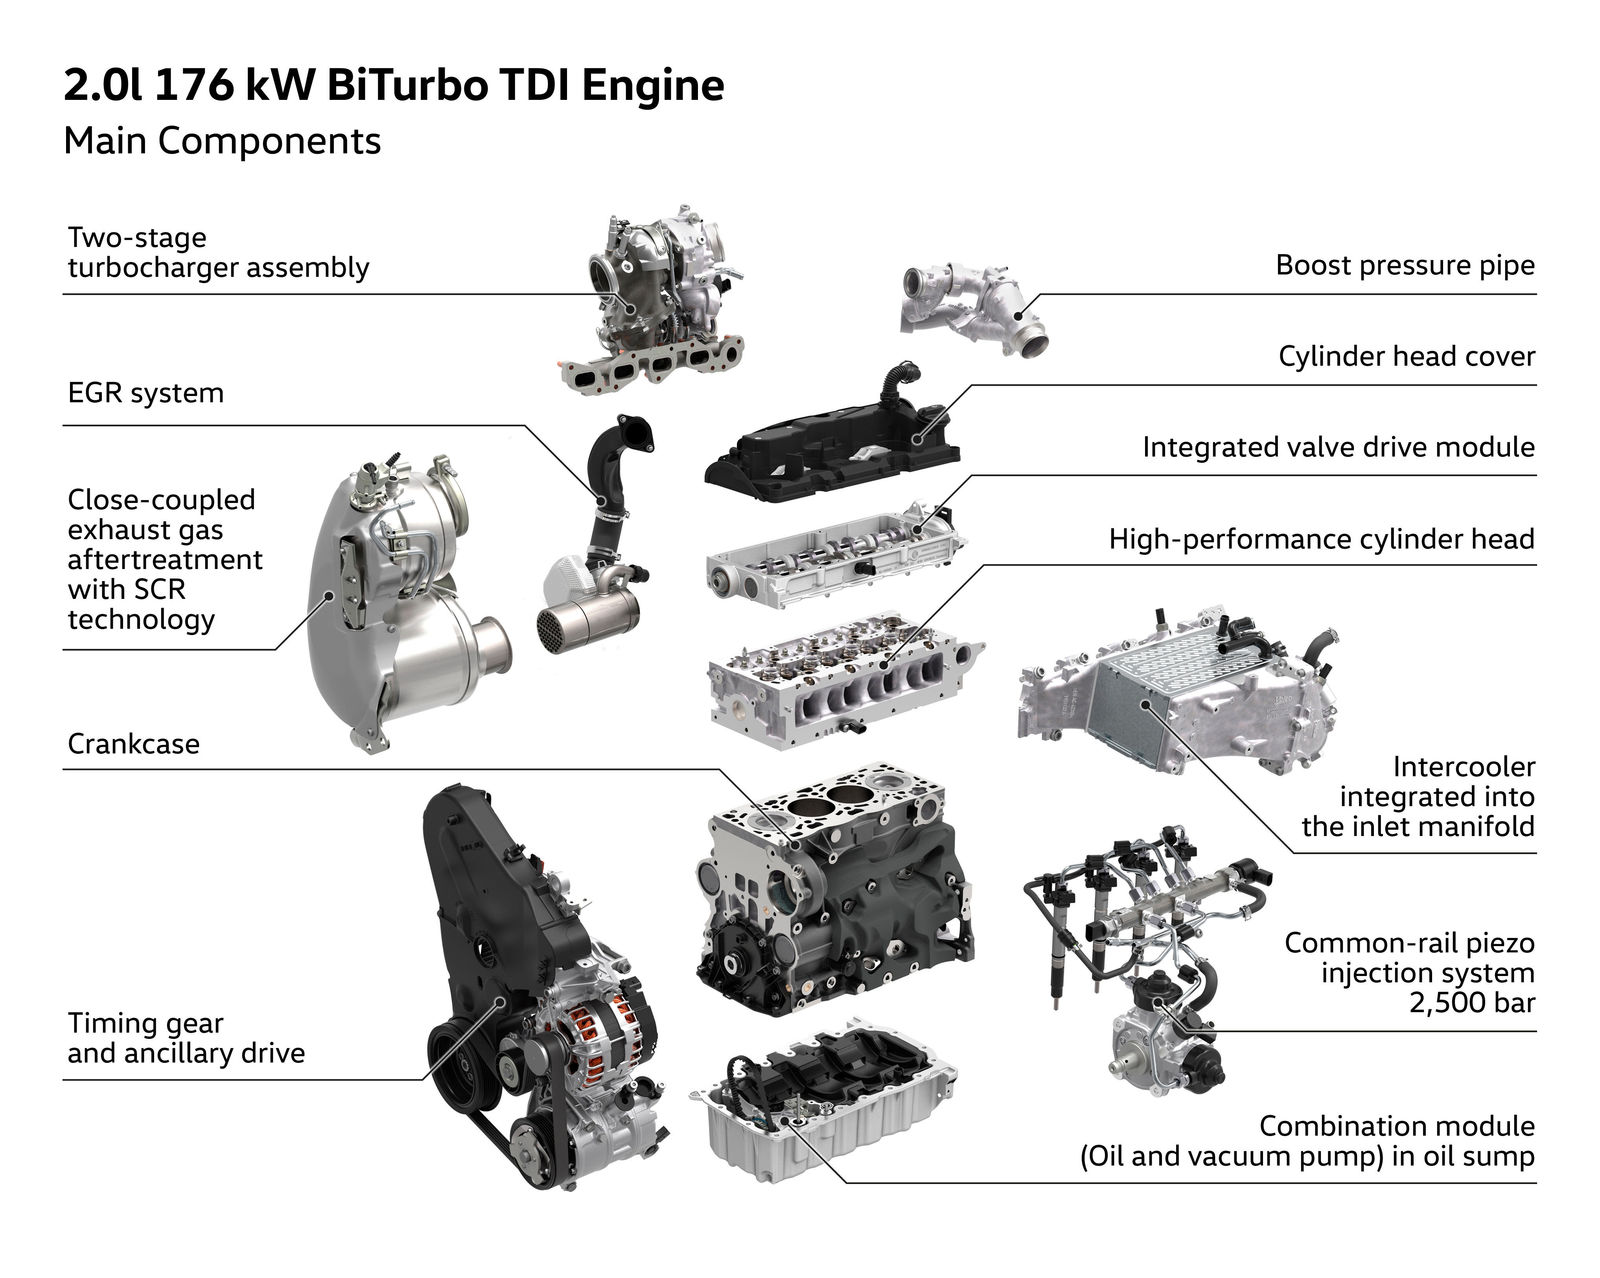 2.0 TDI Biturbo engine with 176 kW / 240 PS Volkswagen Newsroom